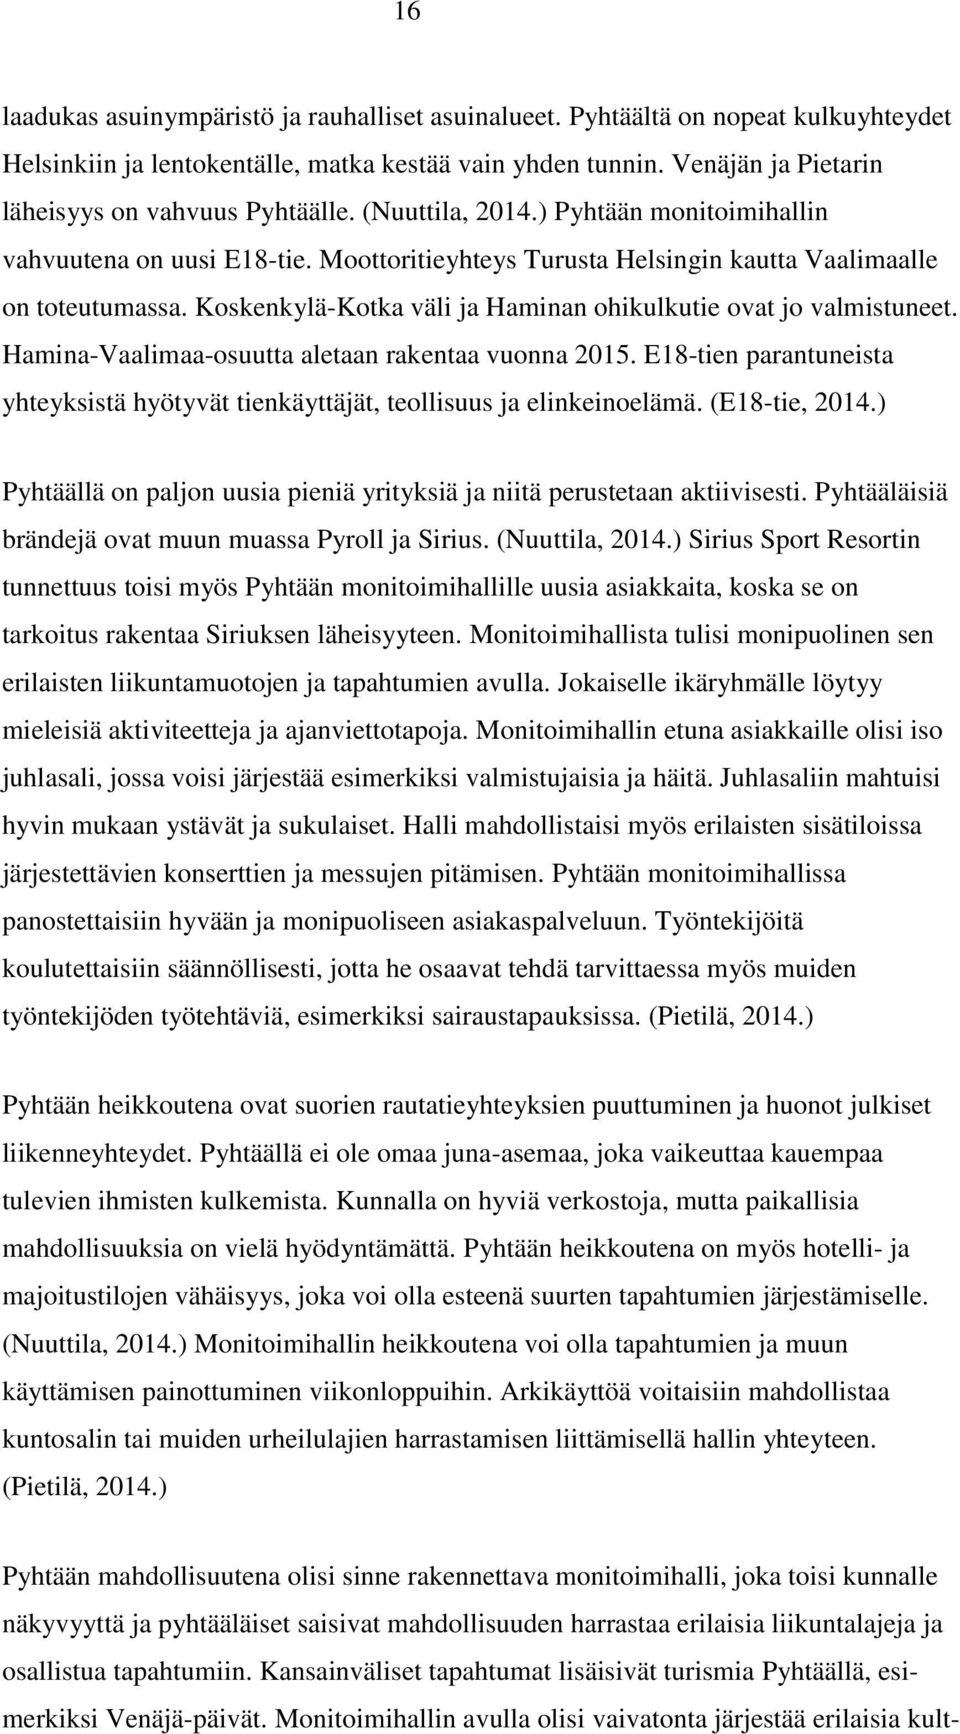 Koskenkylä-Kotka väli ja Haminan ohikulkutie ovat jo valmistuneet. Hamina-Vaalimaa-osuutta aletaan rakentaa vuonna 2015.